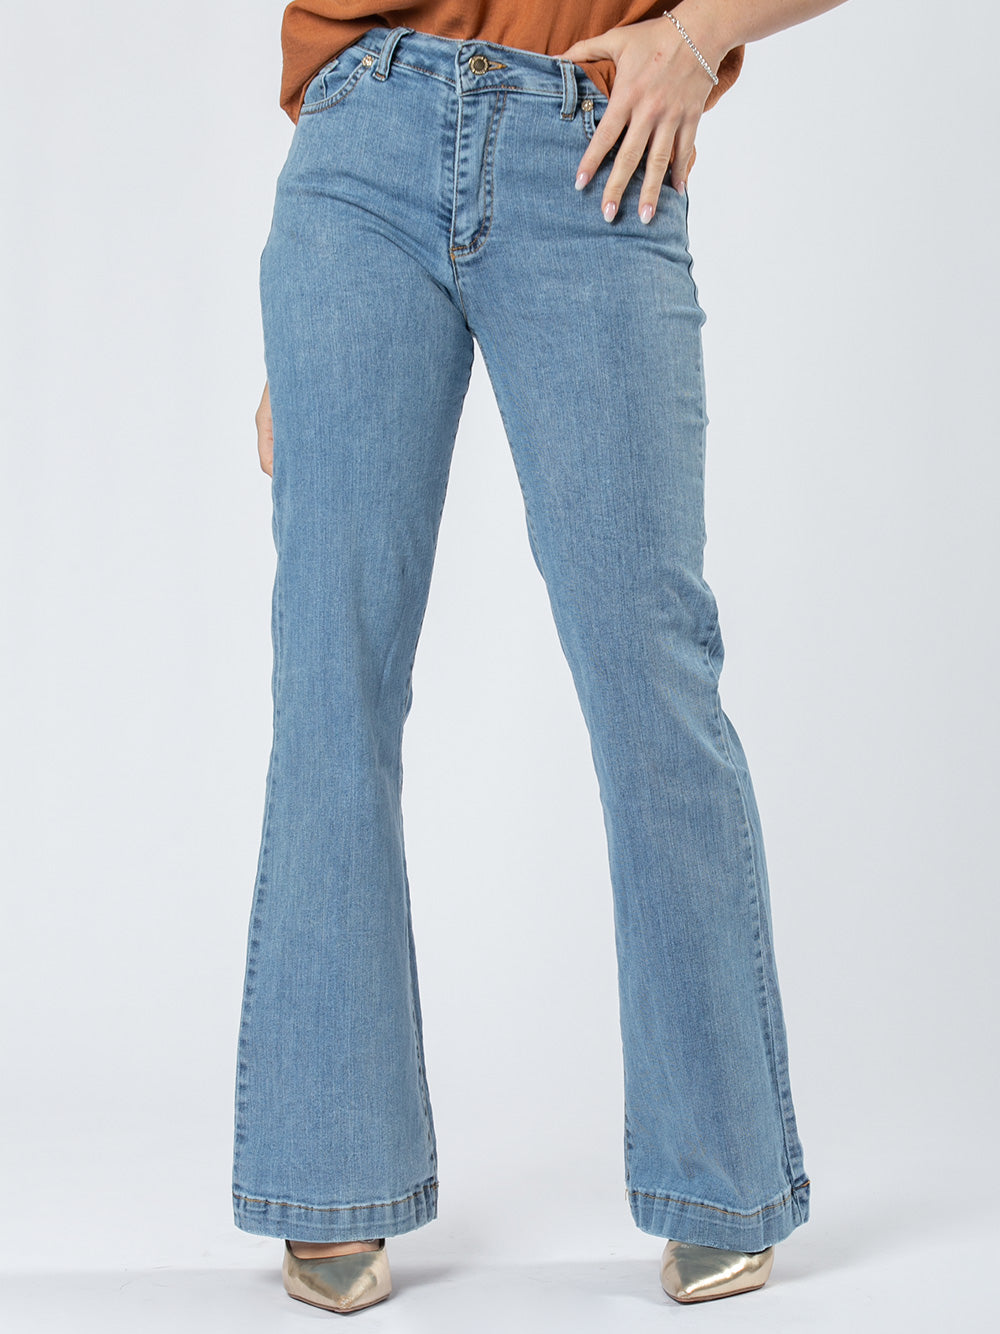 Jeans chiaro wide leg